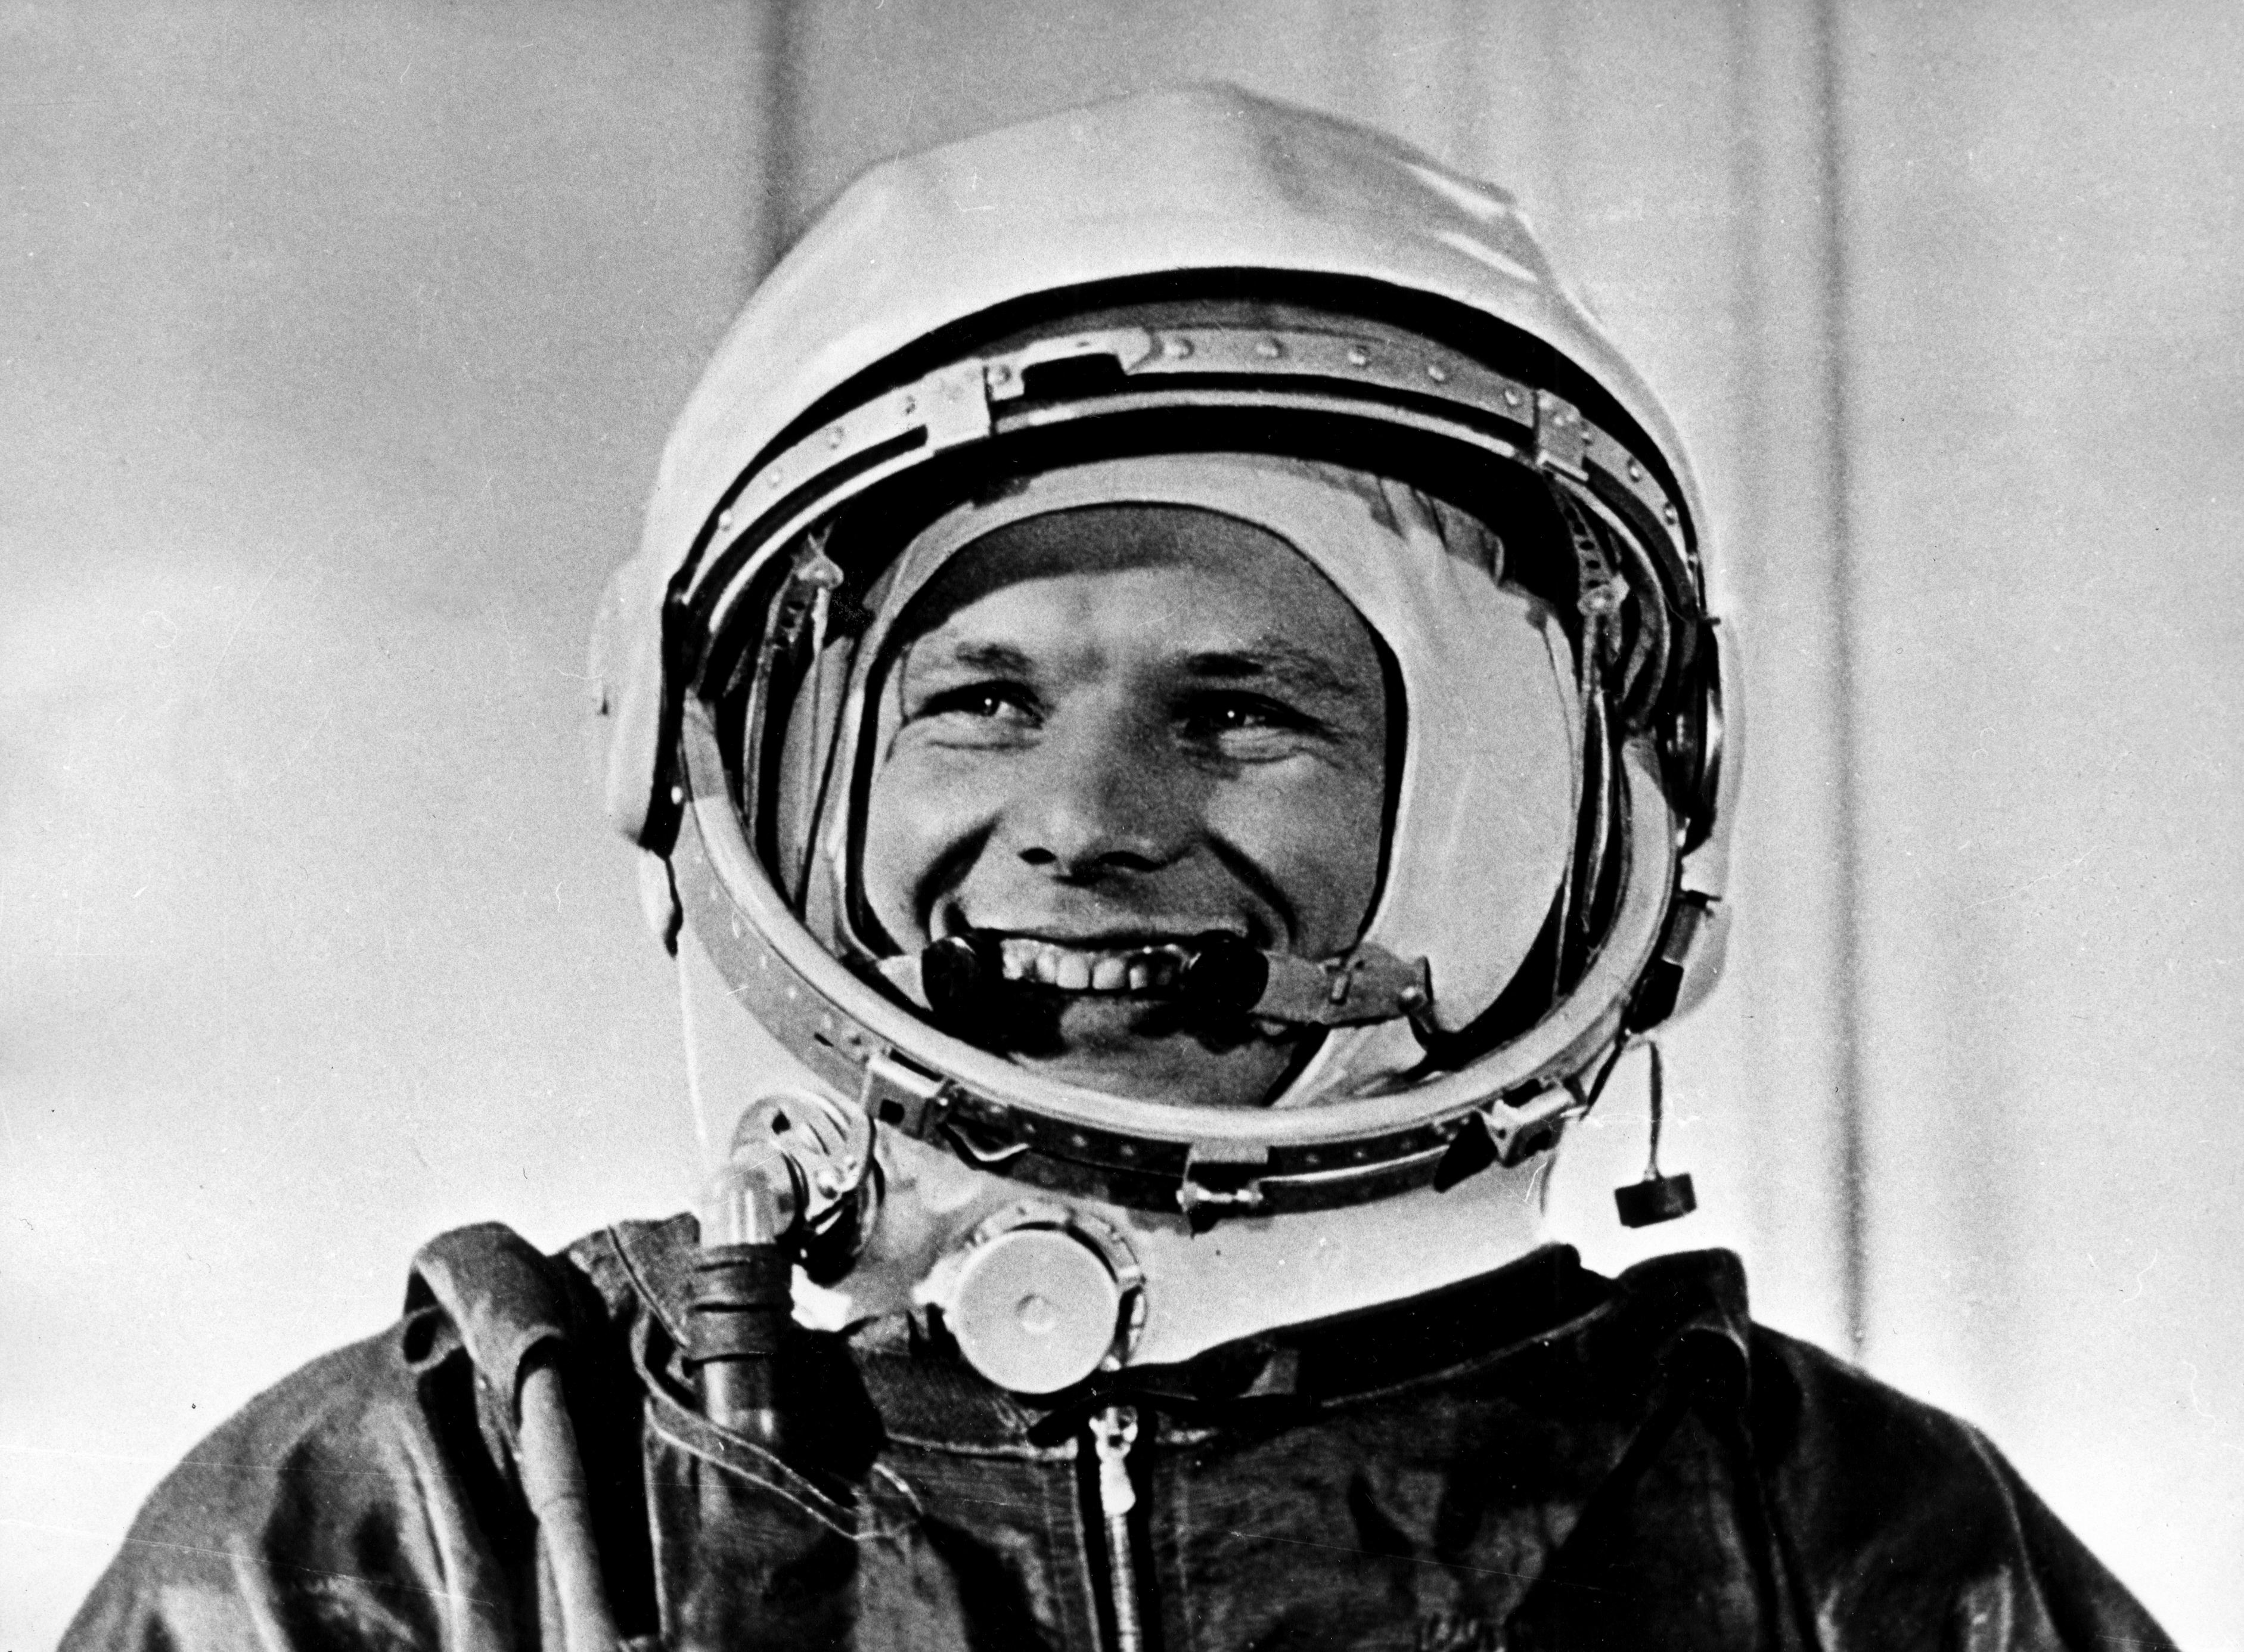 La identidad del piloto de la nave supersónica que se cruzó con el caza en el que viajaba Gagarin nunca ha sido revelada.